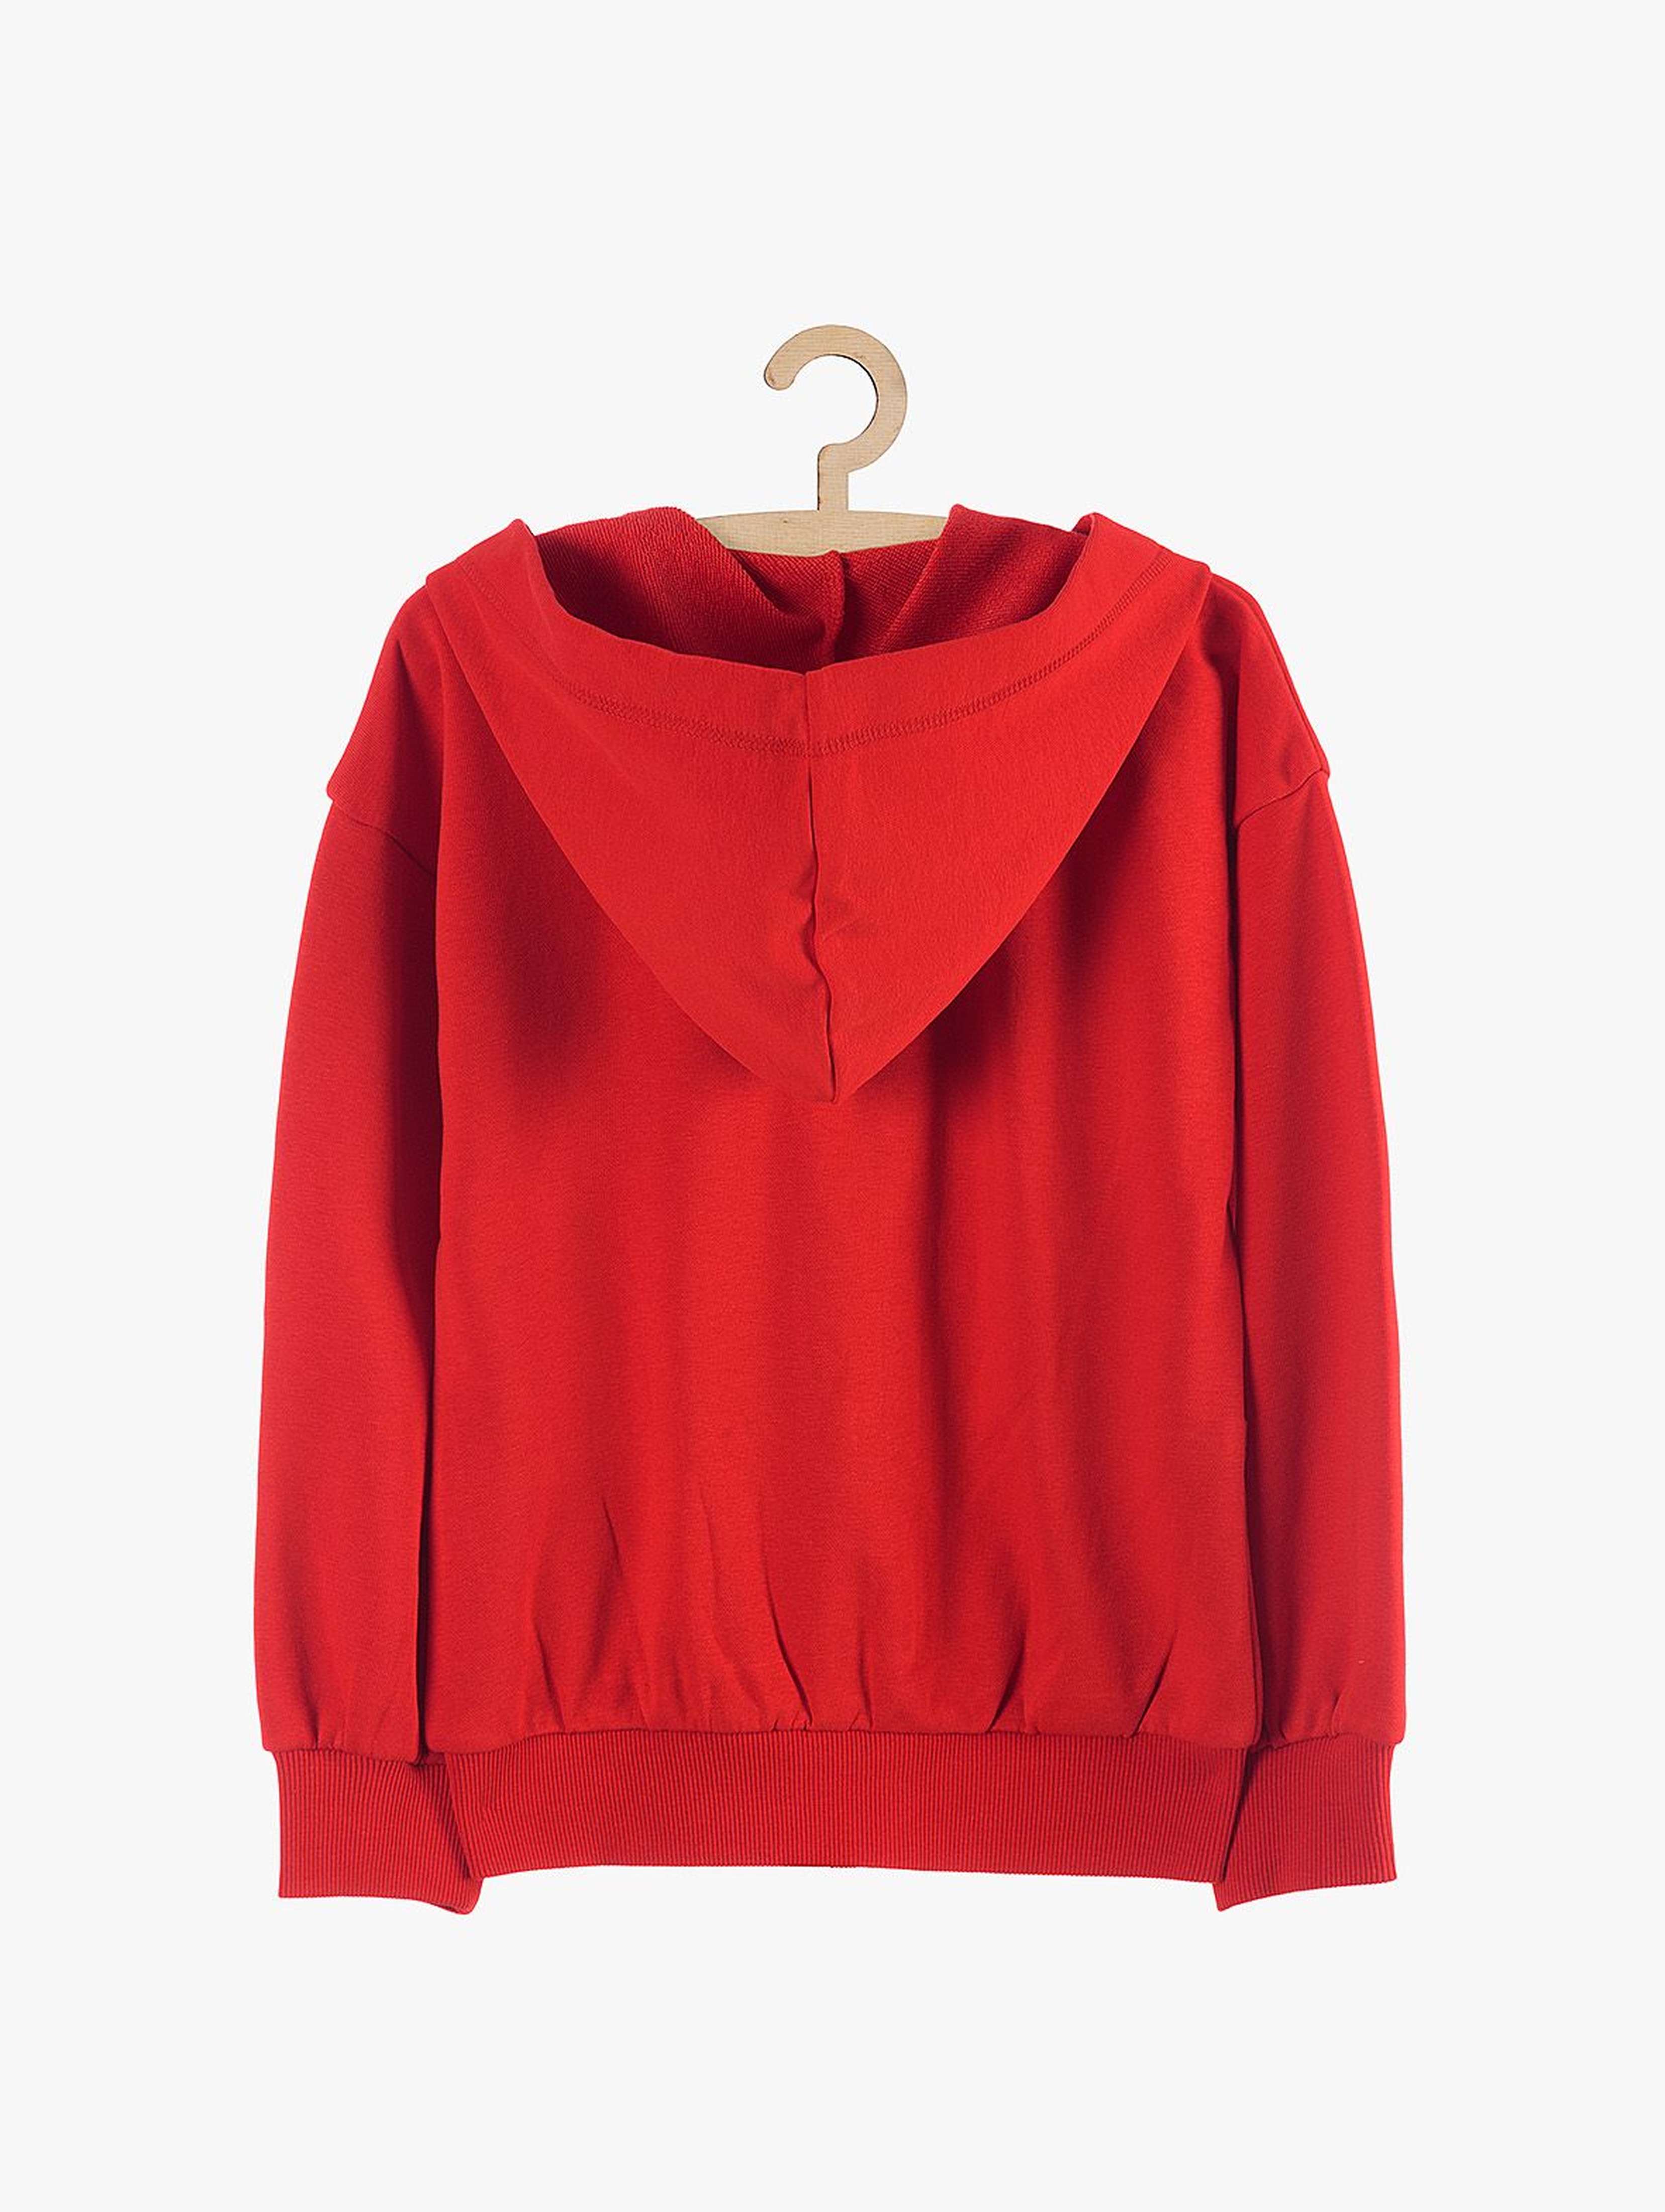 Bluza dresowa dla dziewczynki- czerwona z kapturem